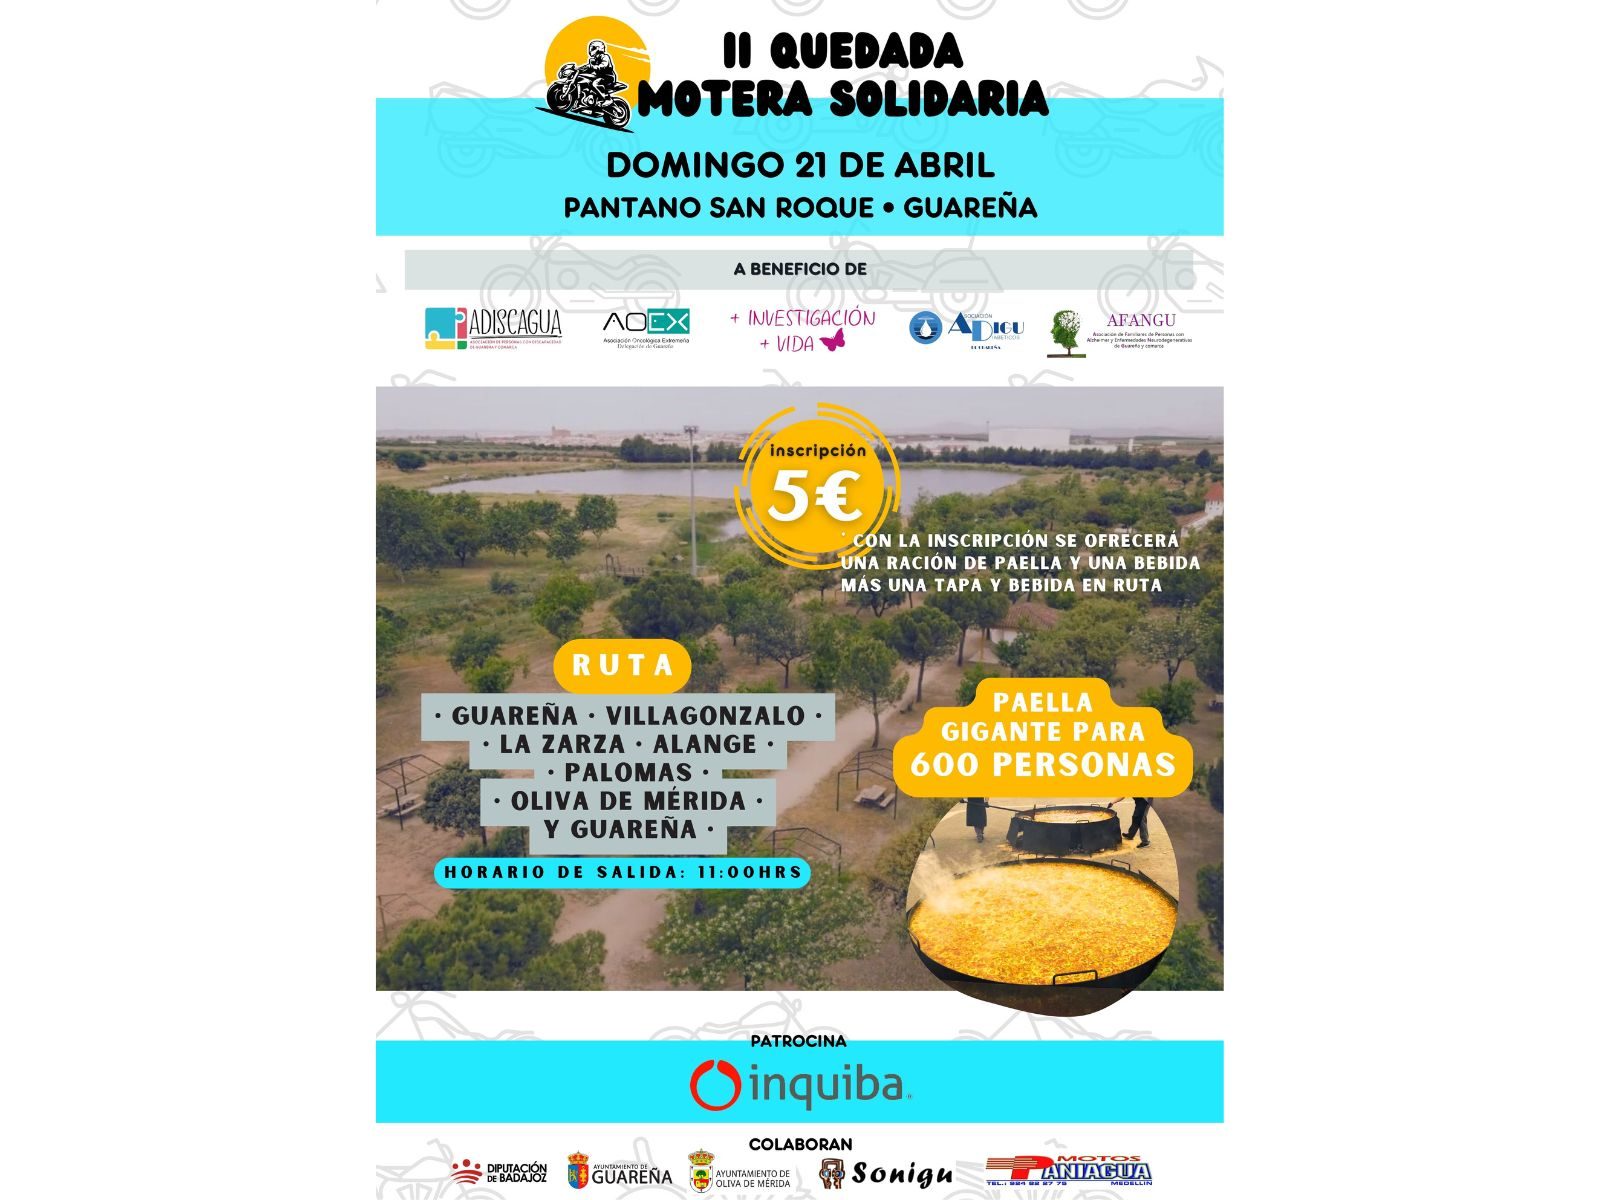 El Pantano San Roque de Guareña acogerá el próximo 21 de abril la II Quedada Motera Solidaria